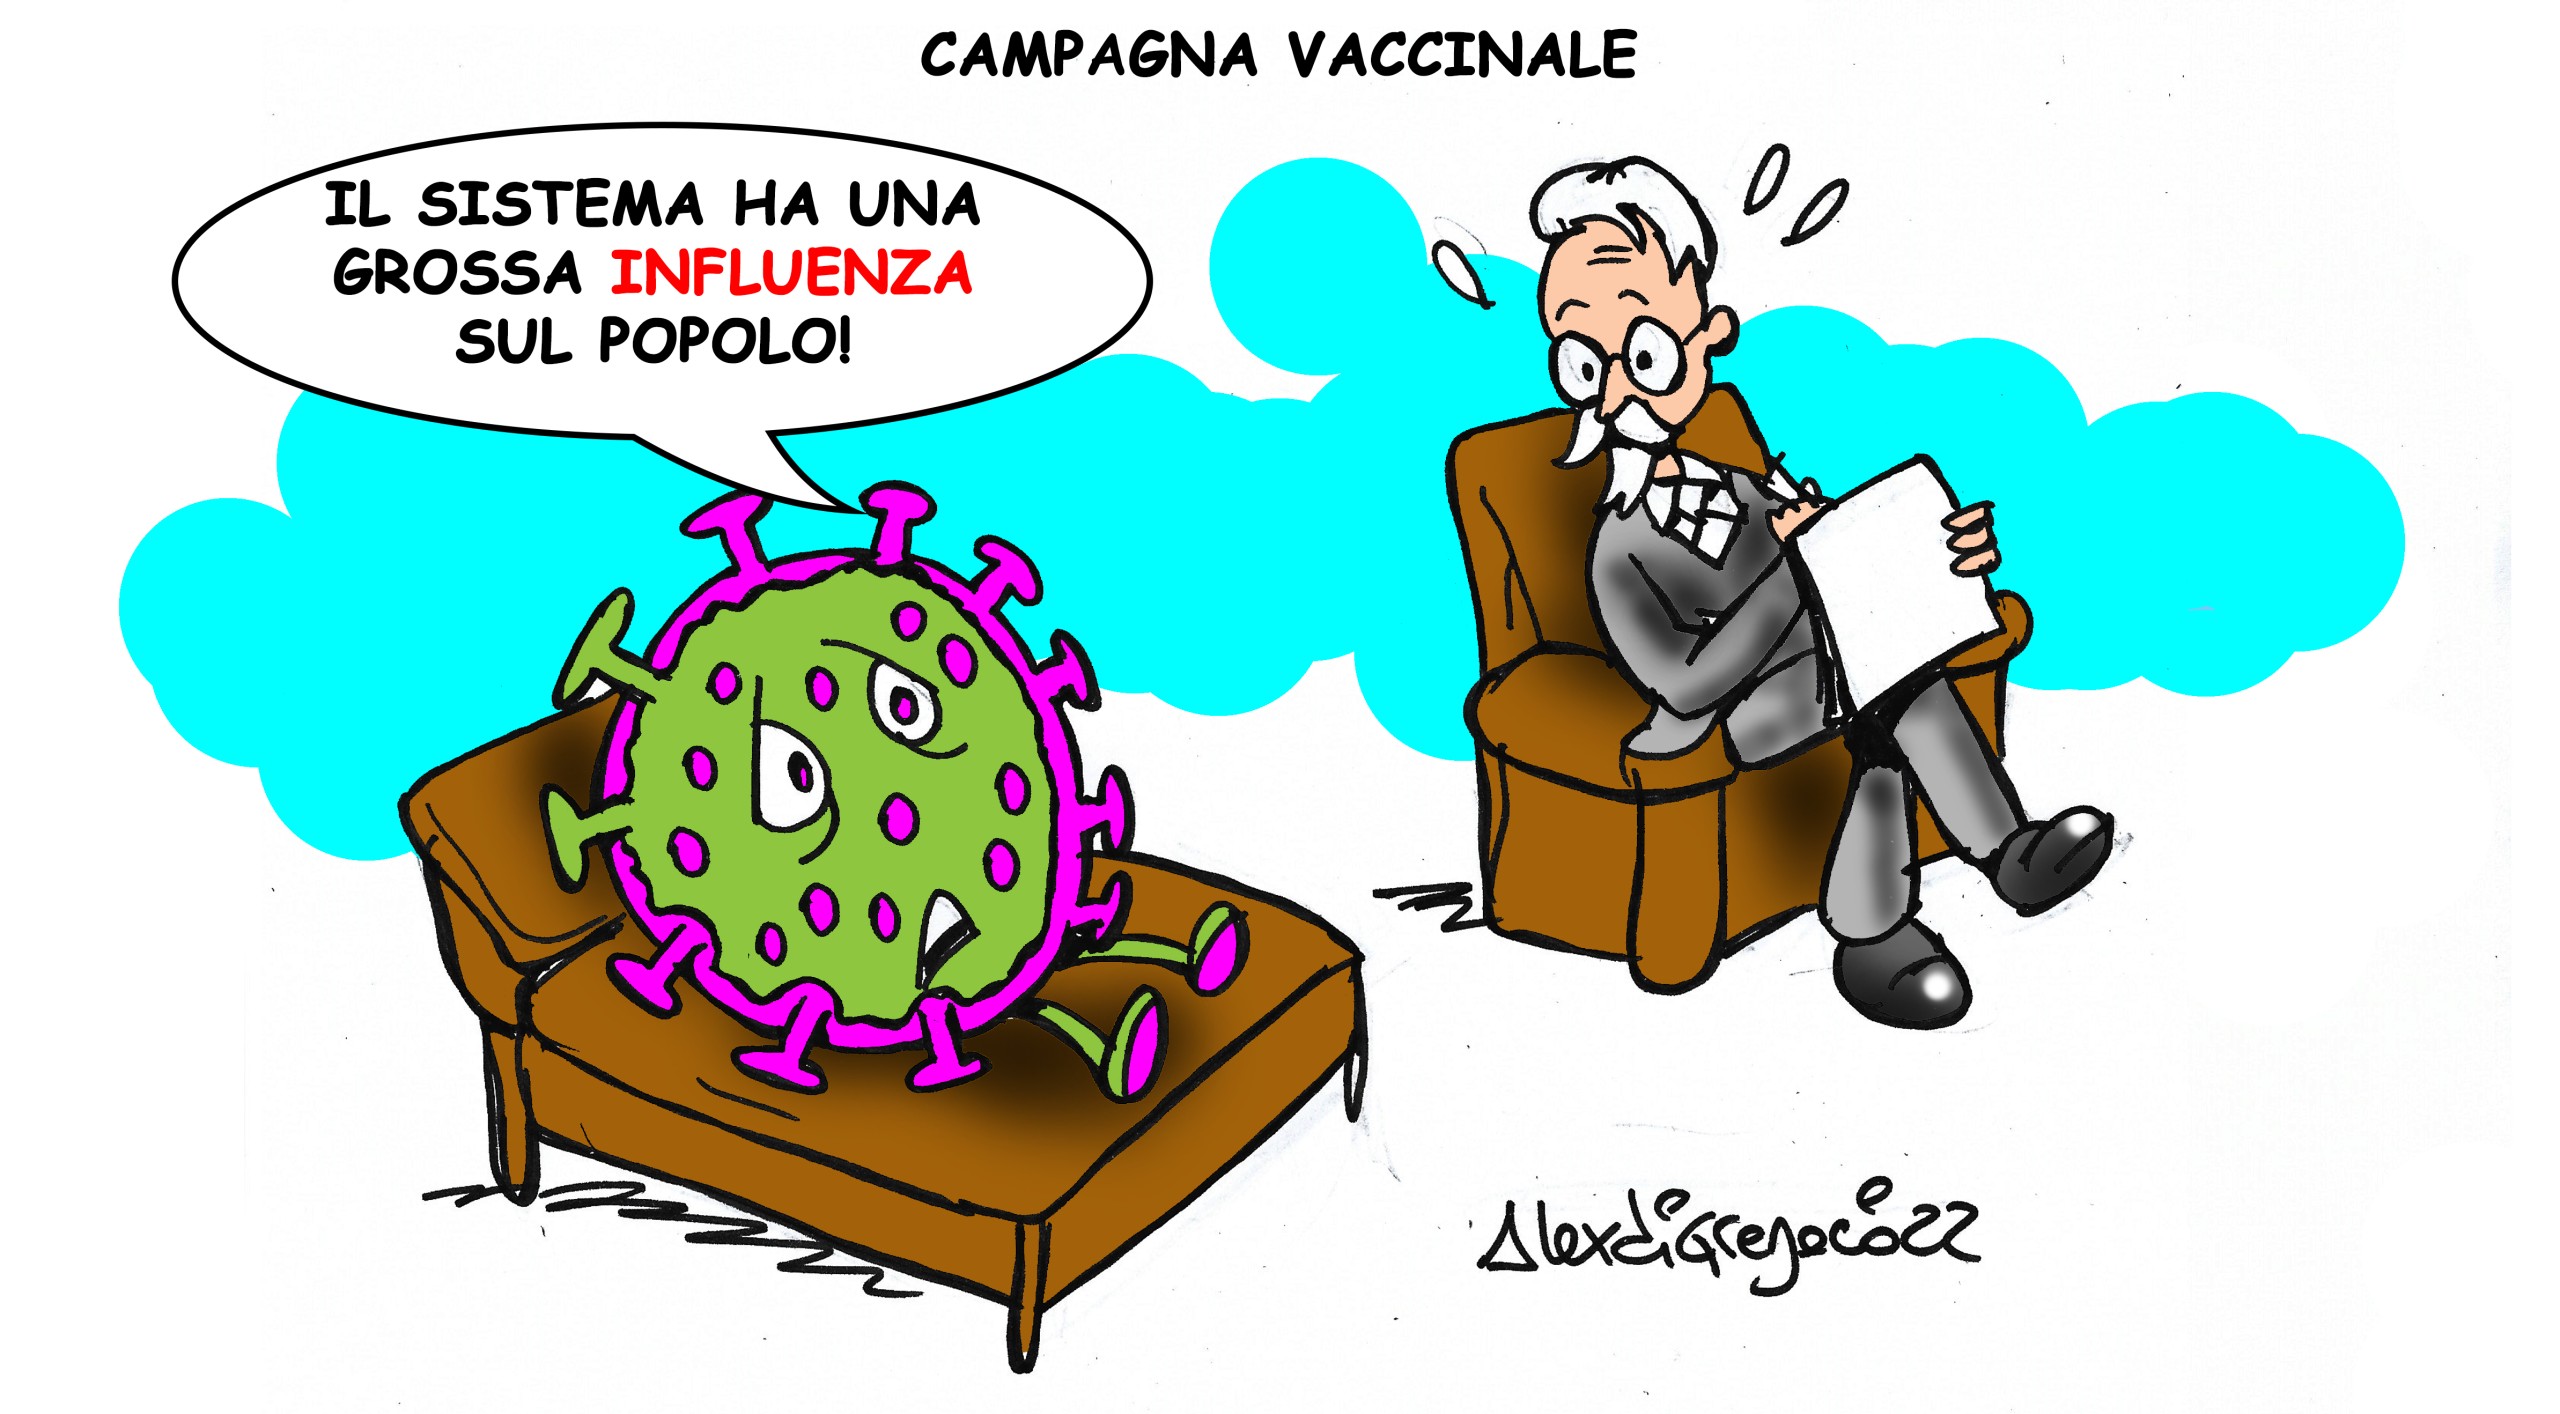 LA VIGNETTA di Alex Di Gregorio: “Campagna vaccinale”